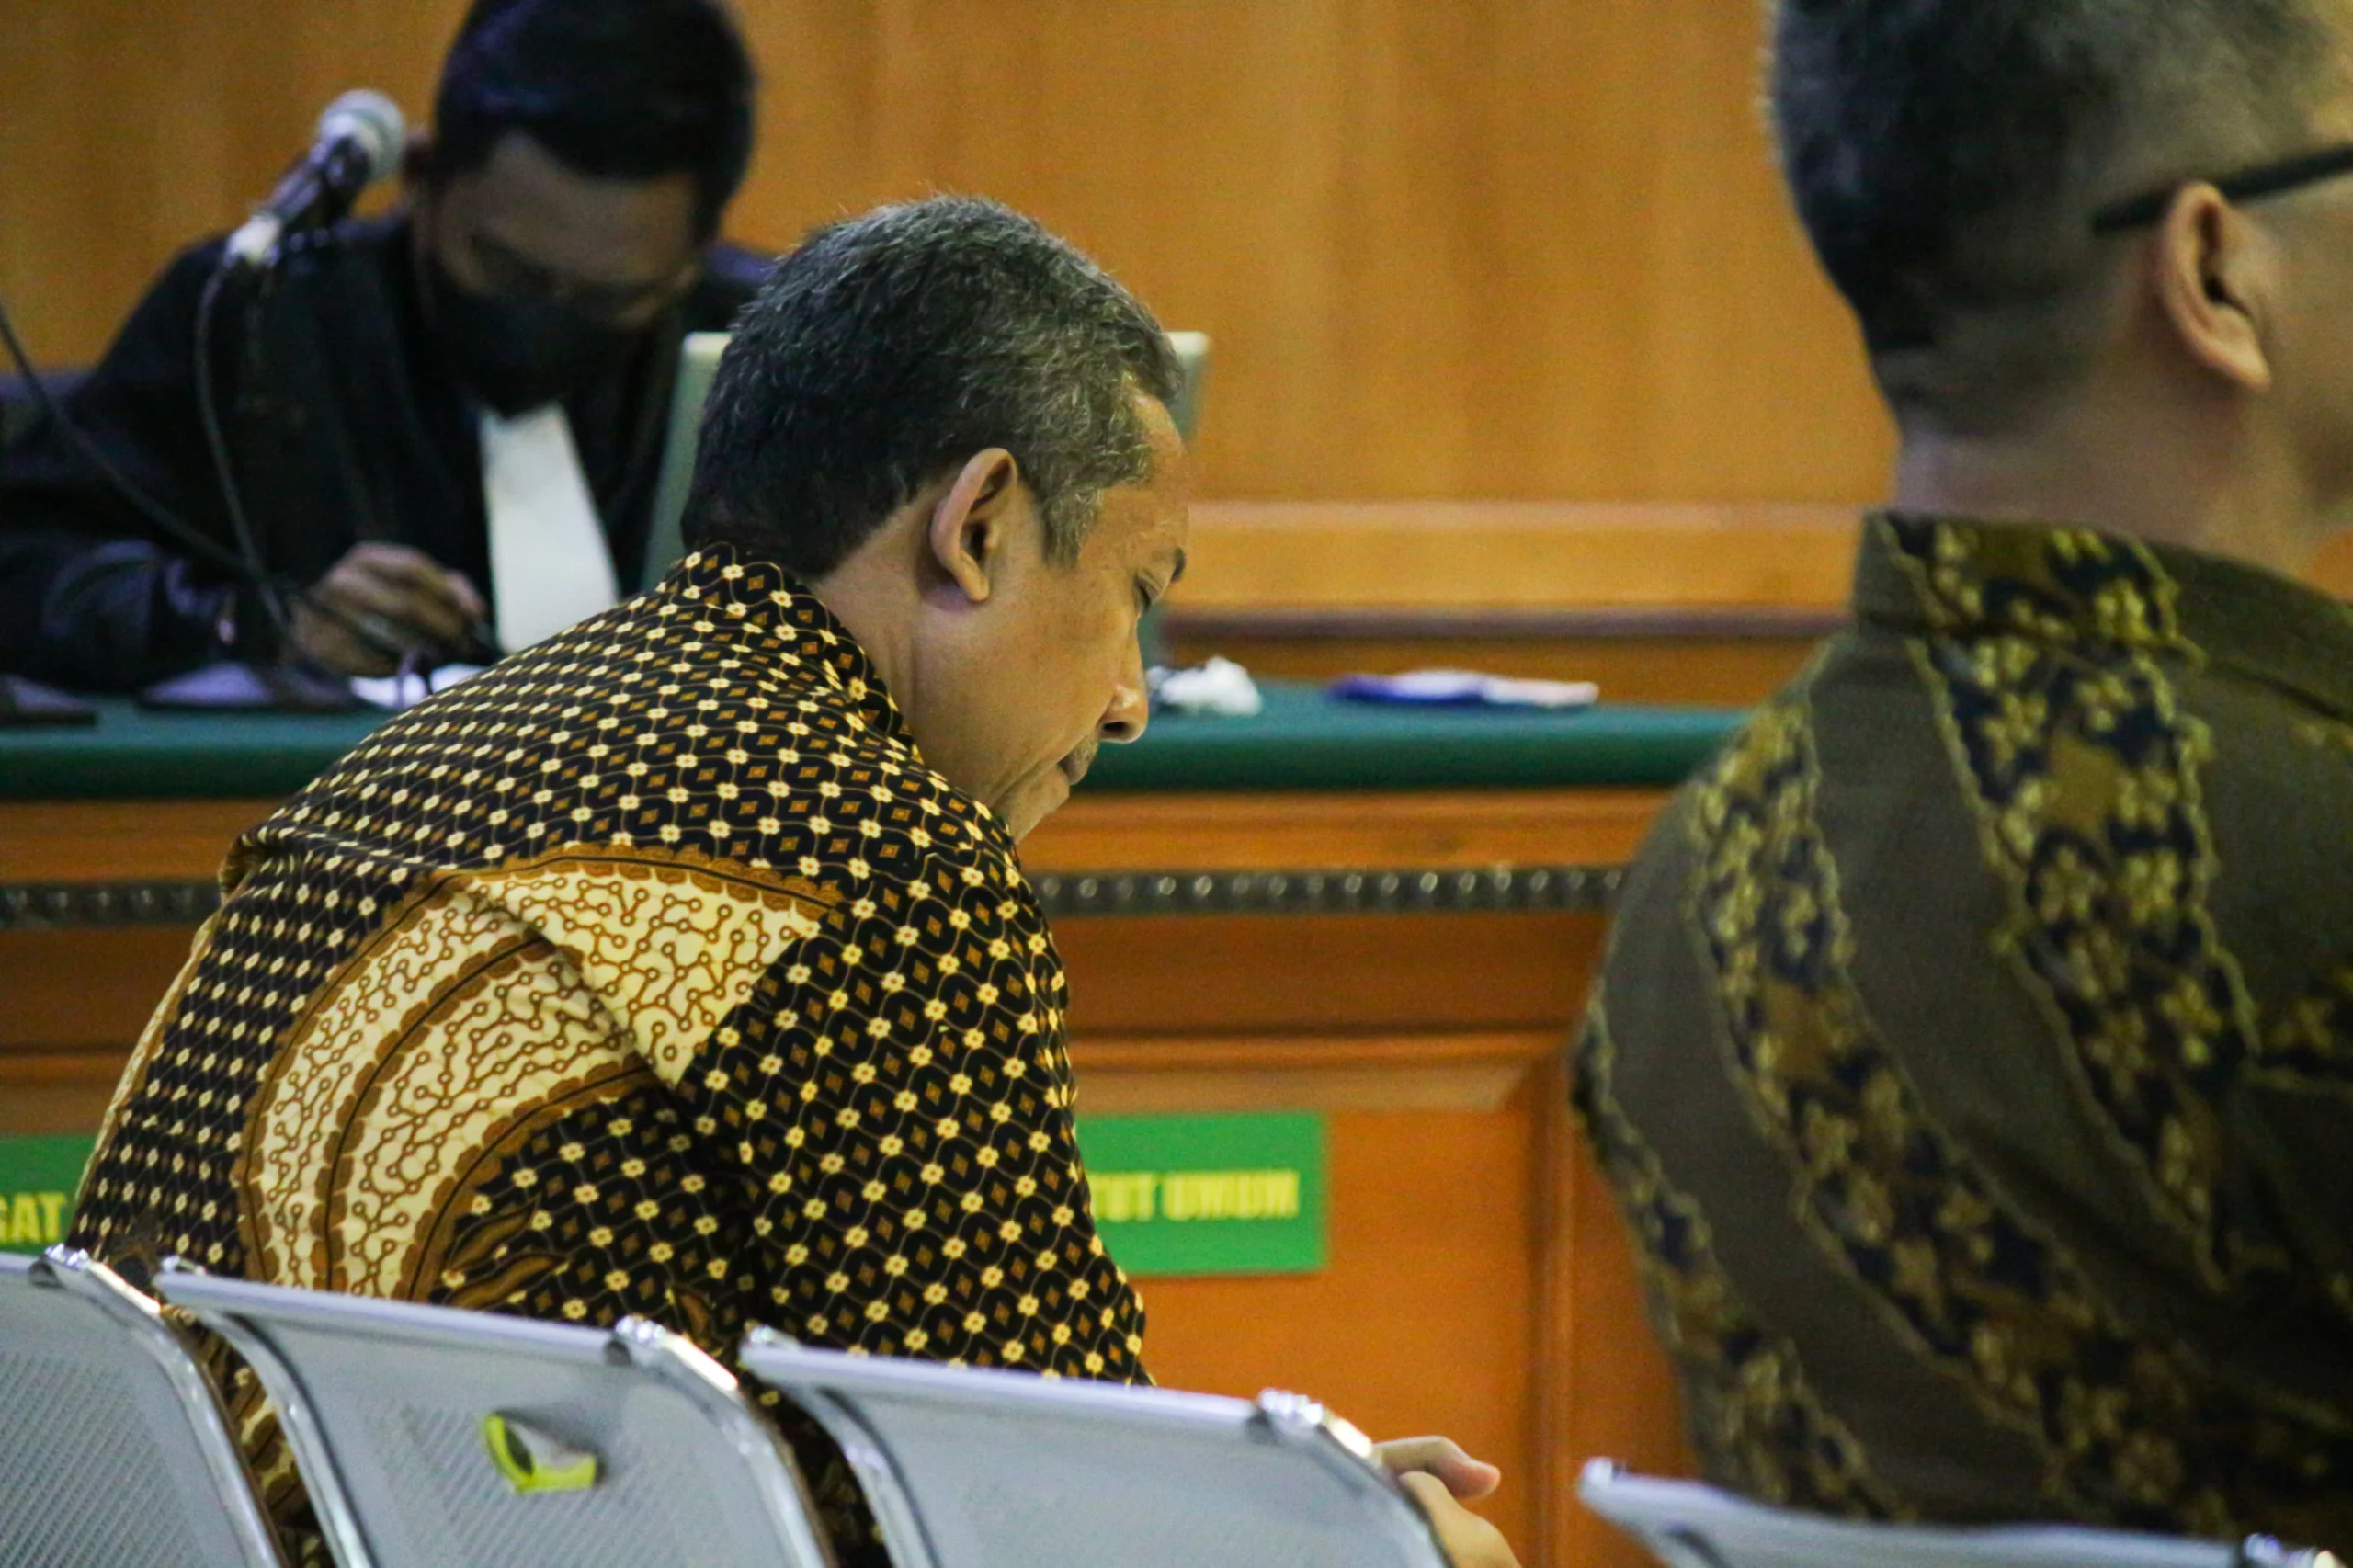 Terpidana kasus pengadaan CCTV dan Internet Service Provider (ISP) Yana Mulyana tertunduk saat Majelis Hakim membacakan putusan hukuman di Pengadilan Negeri Bandung, Jalan R.E.Martadinata, Rabu(13/12). Pandu Muslim/Jabar Ekspres